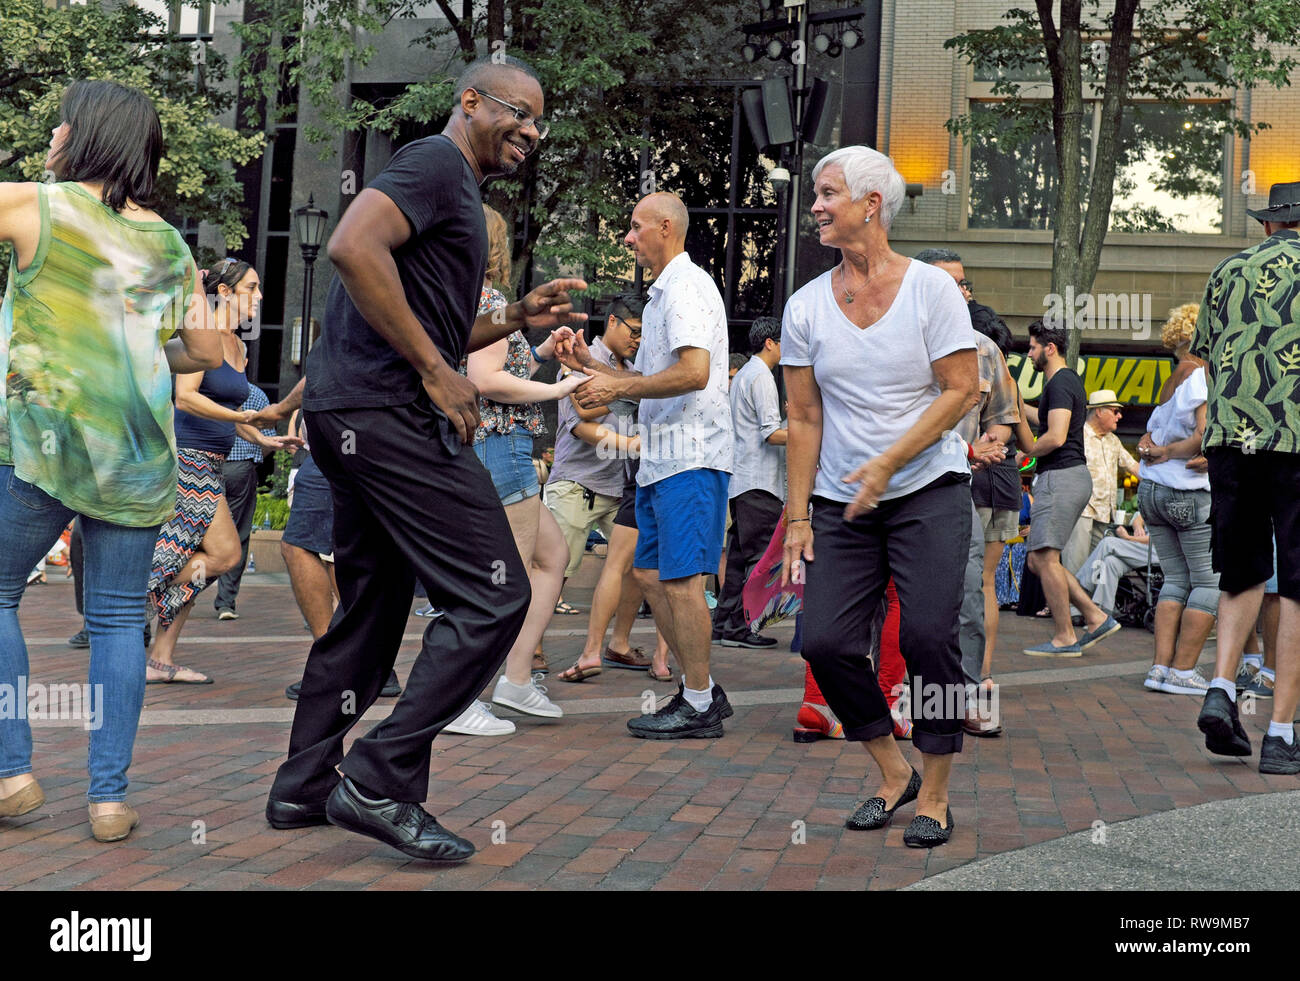 Tanzen in die US-Bank Plaza in der Innenstadt von Cleveland, Ohio, USA ist eine wöchentliche Sommer Event zieht einen Querschnitt der Clevelanders und Besucher. Stockfoto